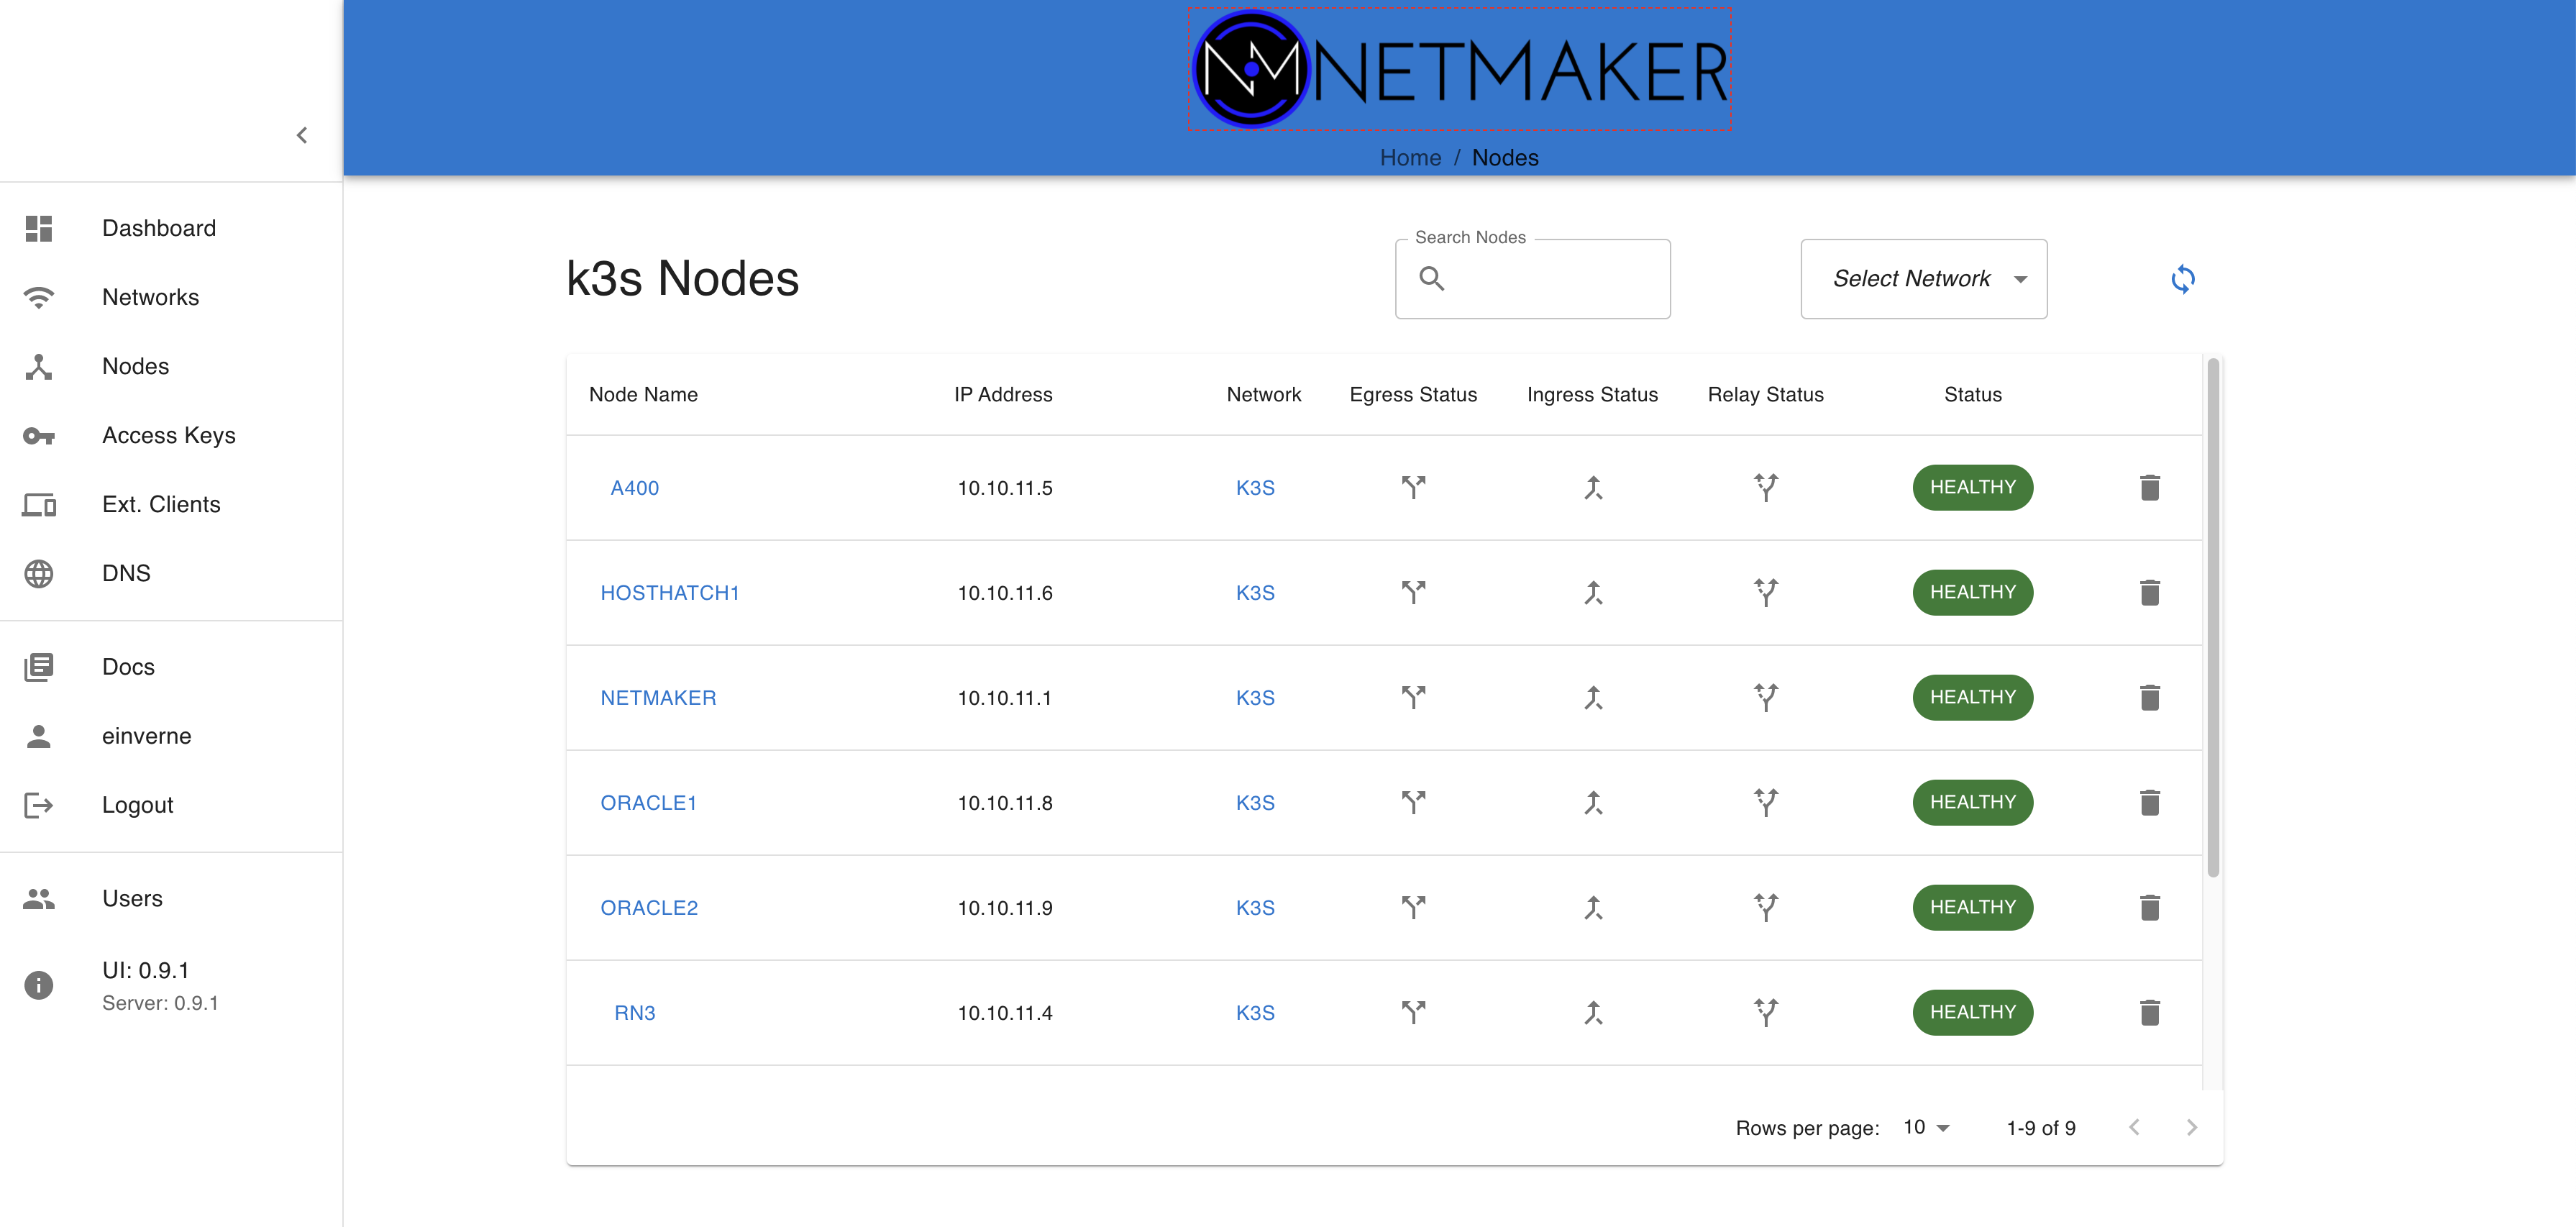 netmaker-dashboard-202112121542451.png